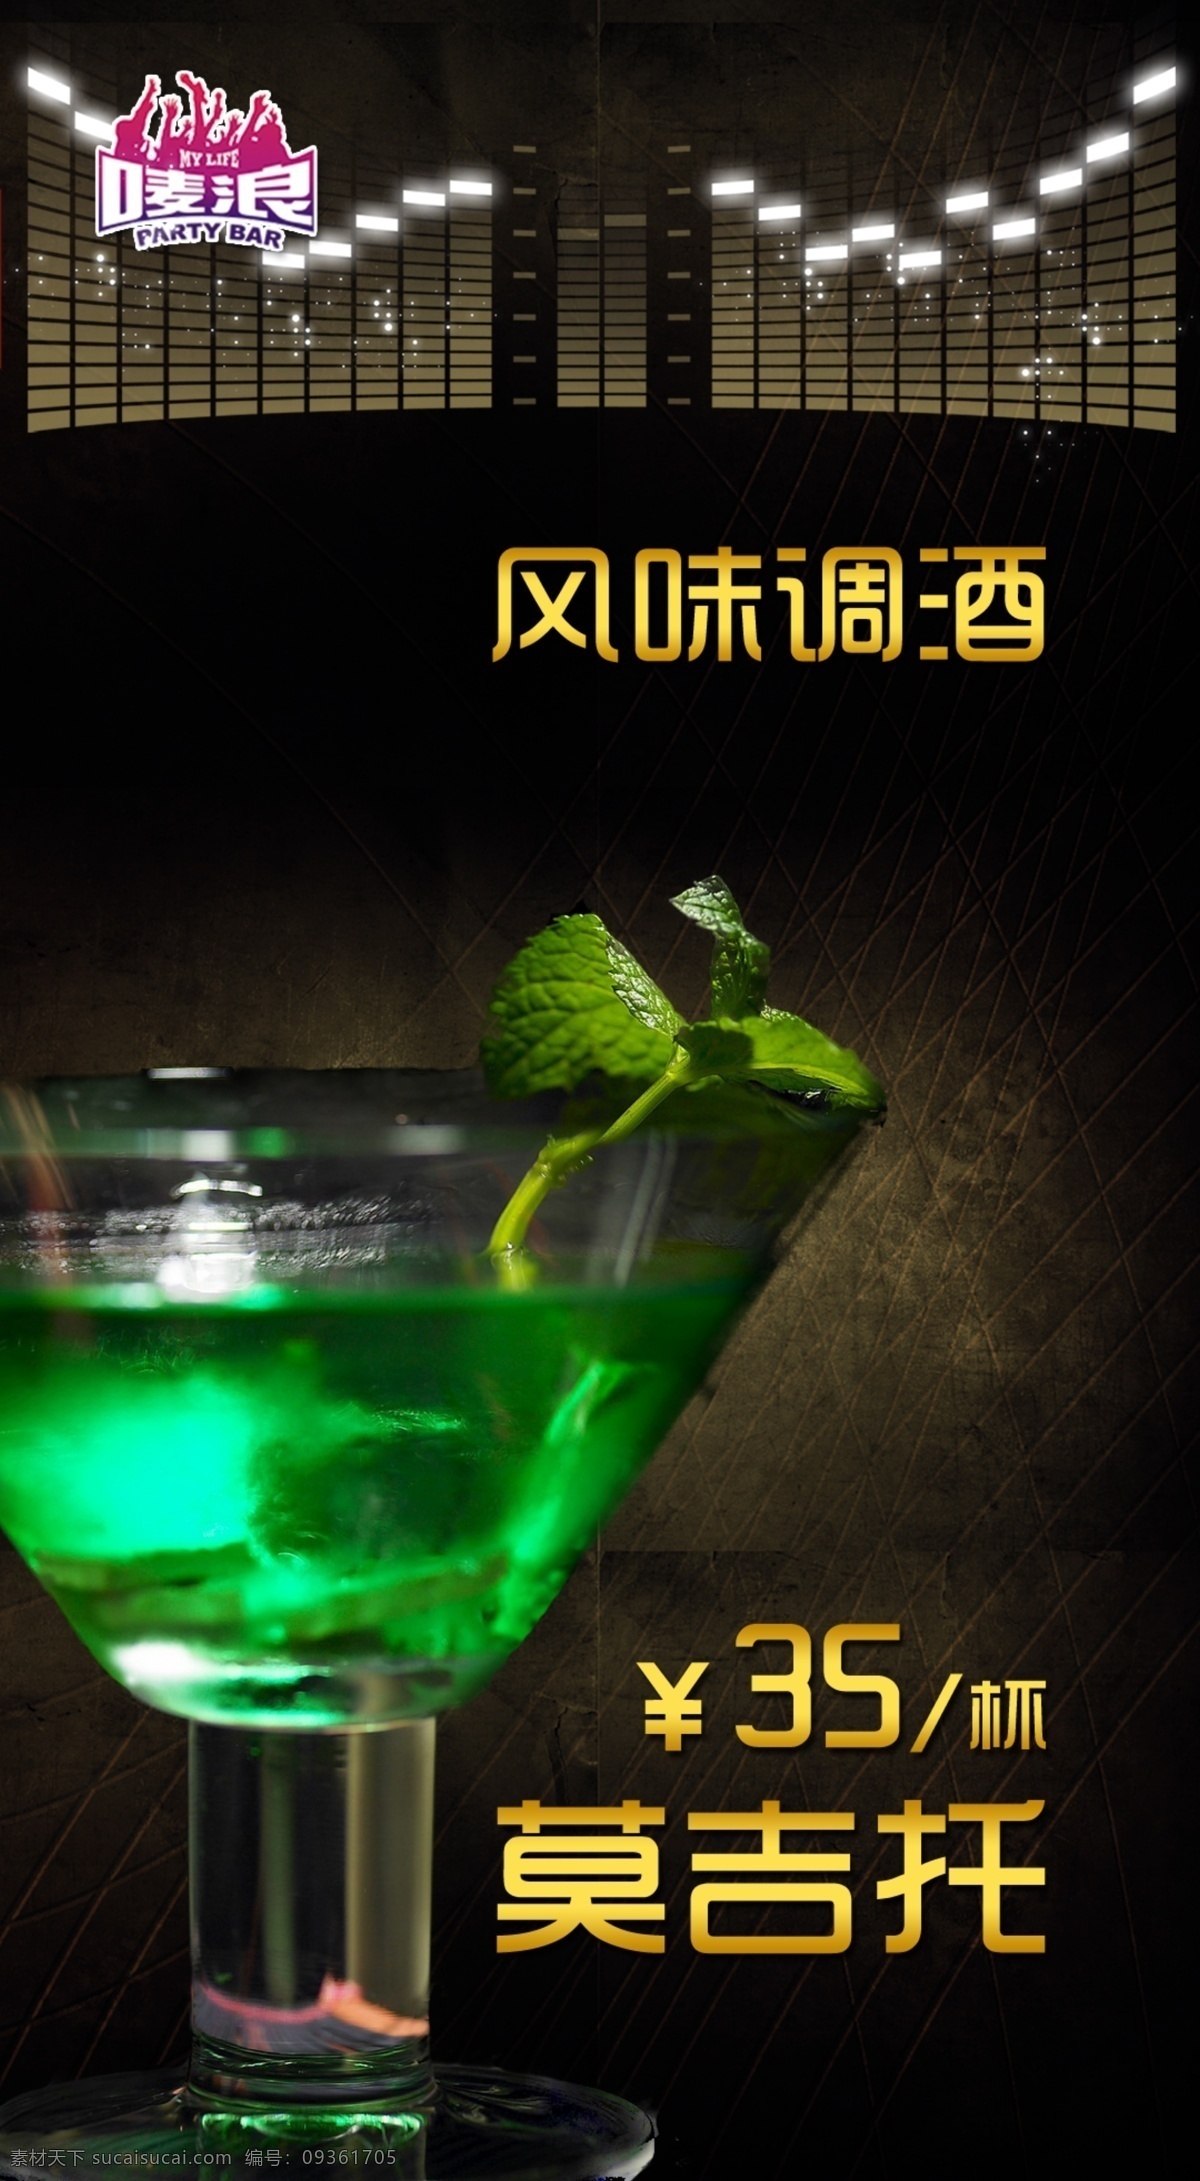 鸡尾酒 ktv 广告设计模板 酒吧 时尚 娱乐 源文件 其他海报设计